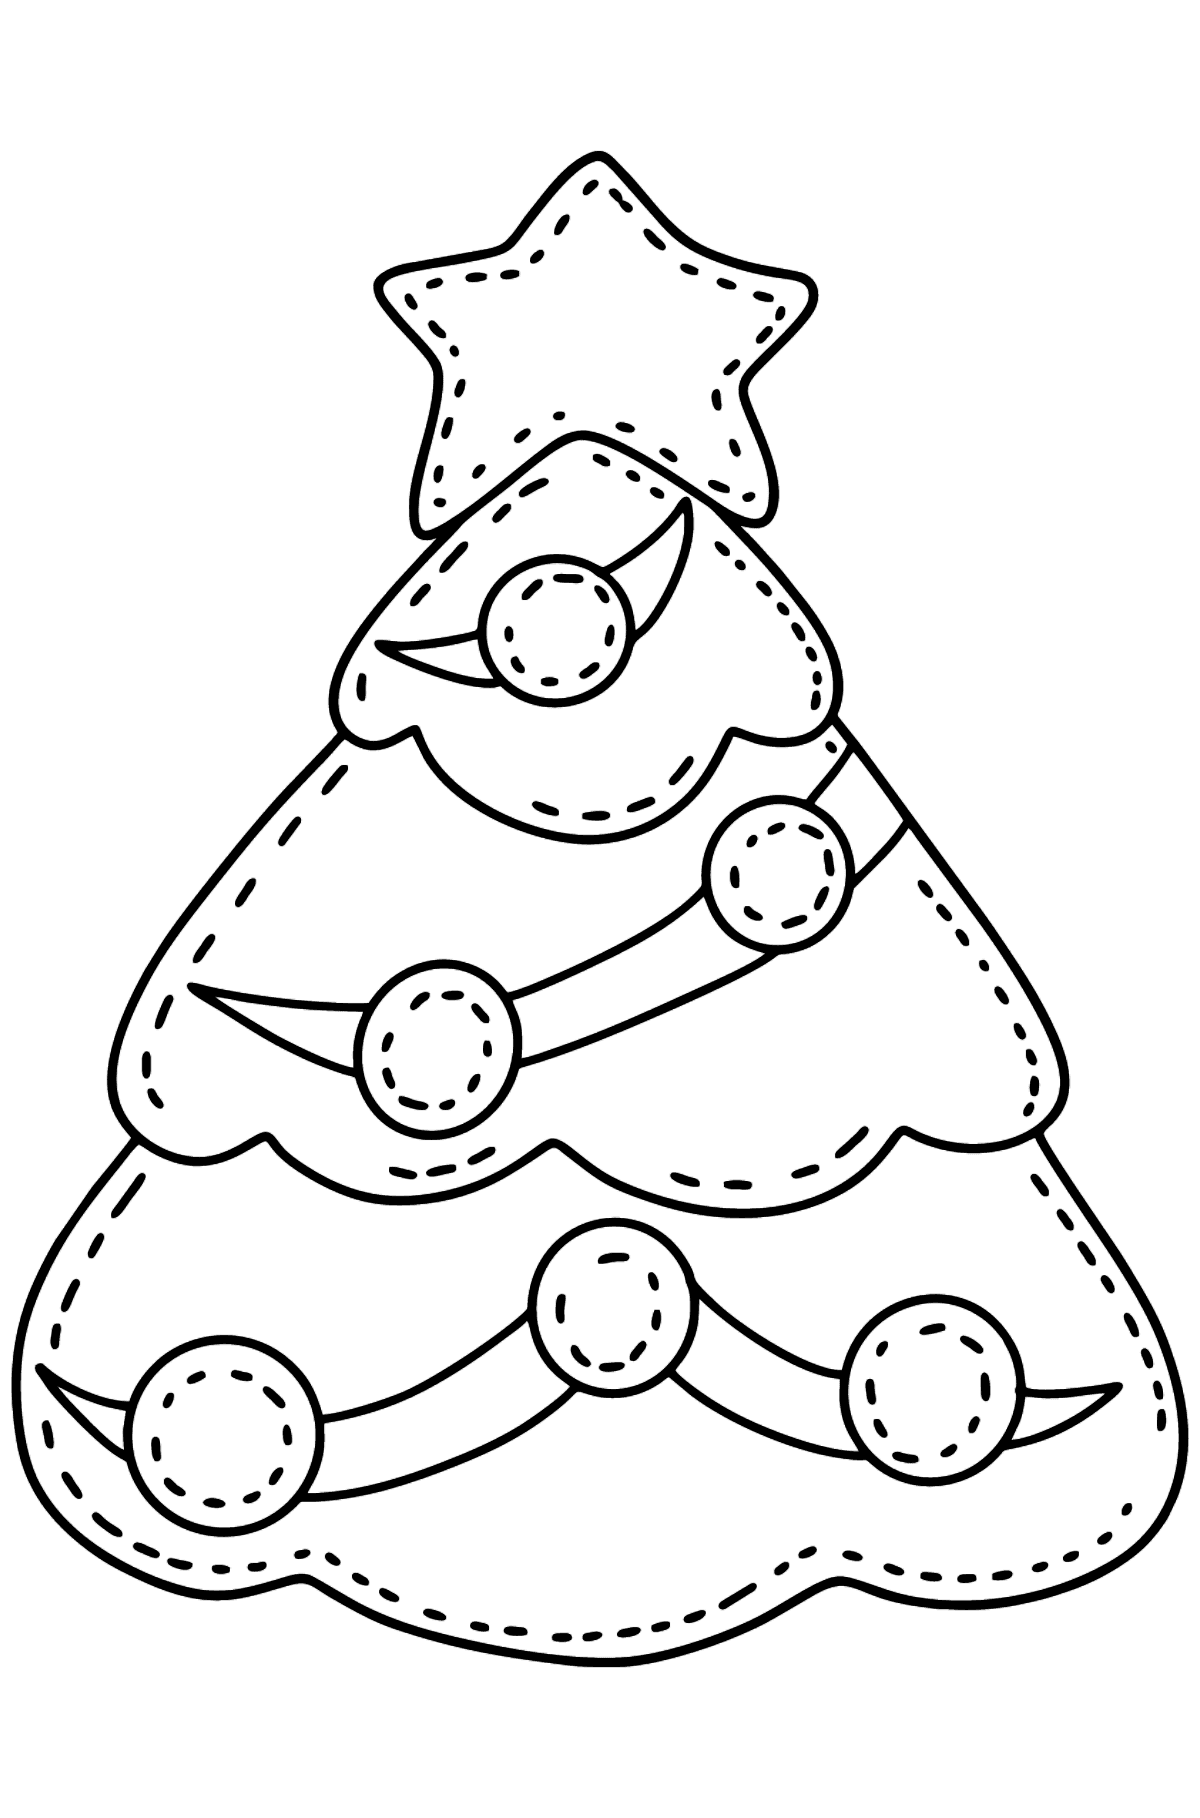 Ausmalbild Filz Weihnachtsbaum - Malvorlagen für Kinder